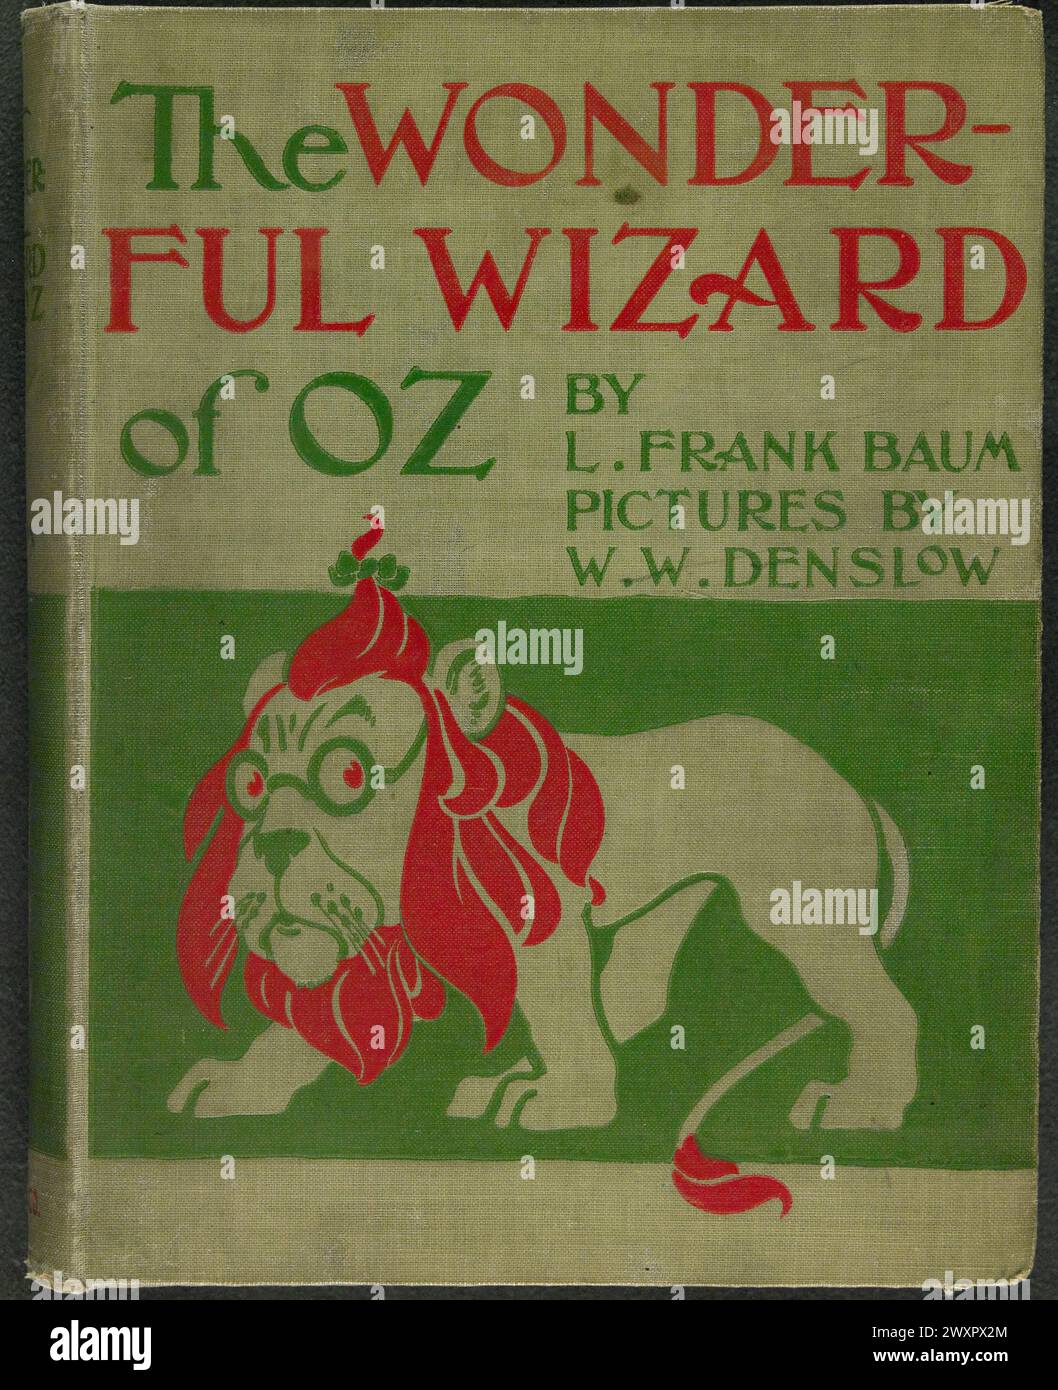 Couverture de livre vintage pour la première édition de The Wonderful Wizard of Oz de Frank Baum, 1900 Banque D'Images